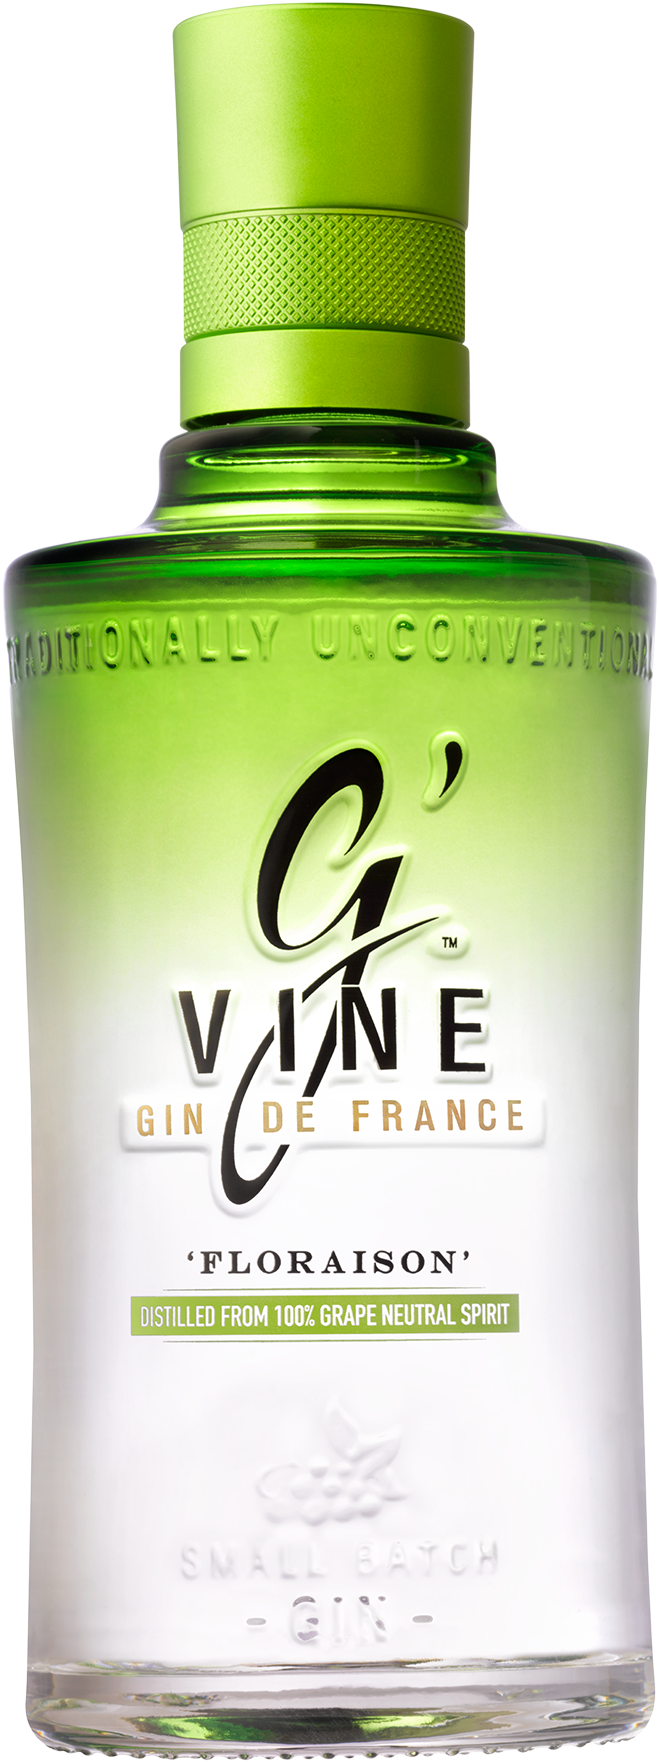 Bottle-floraison - Gvine Gin De France Clipart (791x1772), Png Download